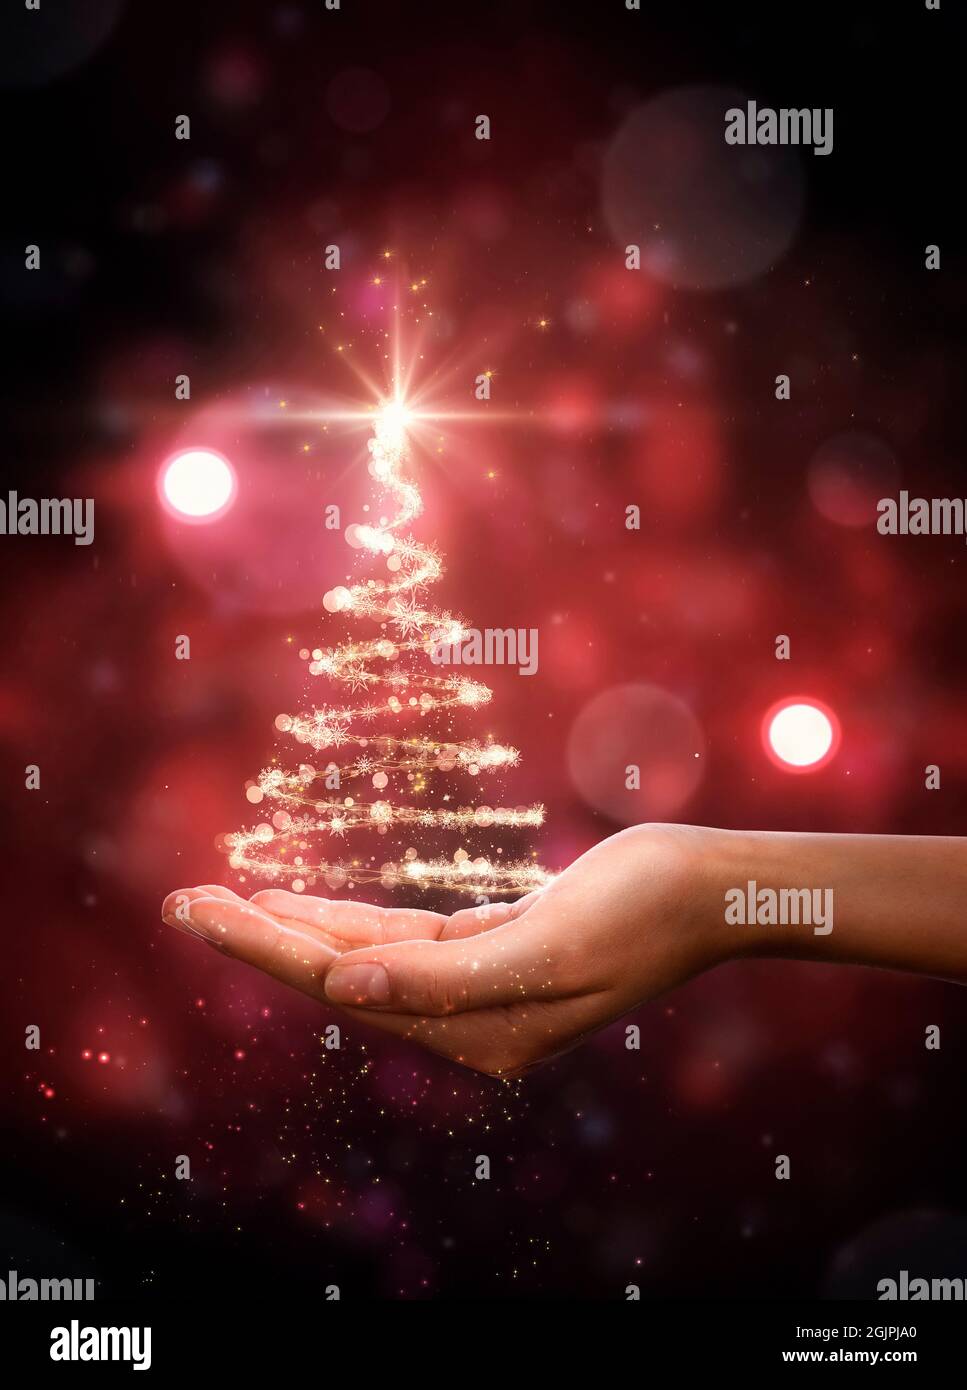 Arbre de Noël rouge à la main. Sapin de Noël, belles lumières, étoiles et flocons de neige Banque D'Images